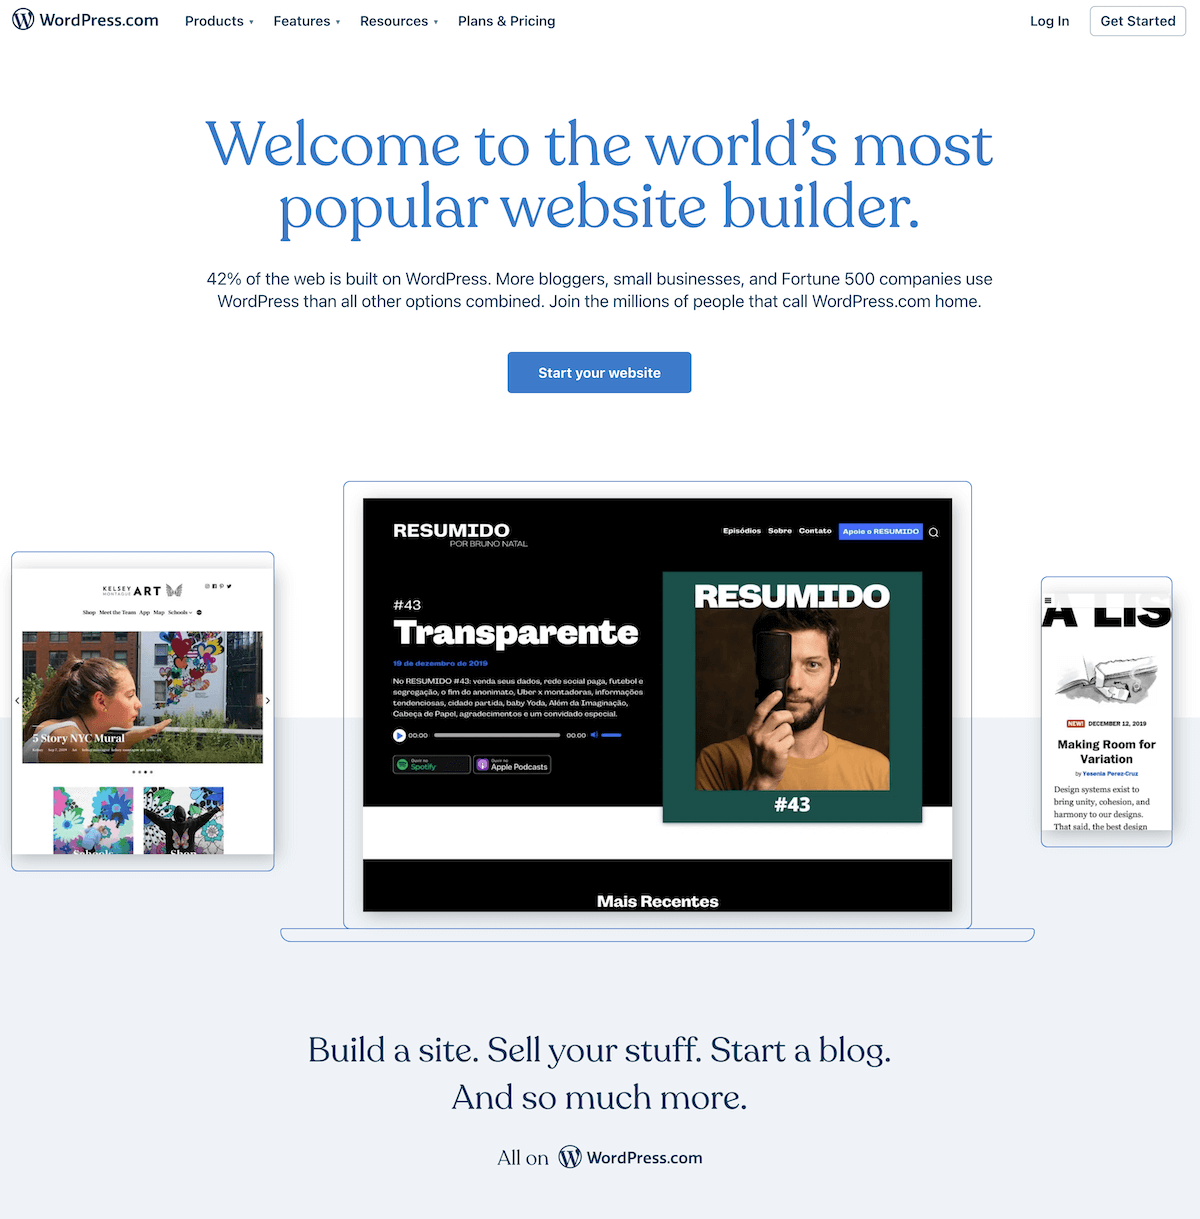 Sitio web de WordPress.com